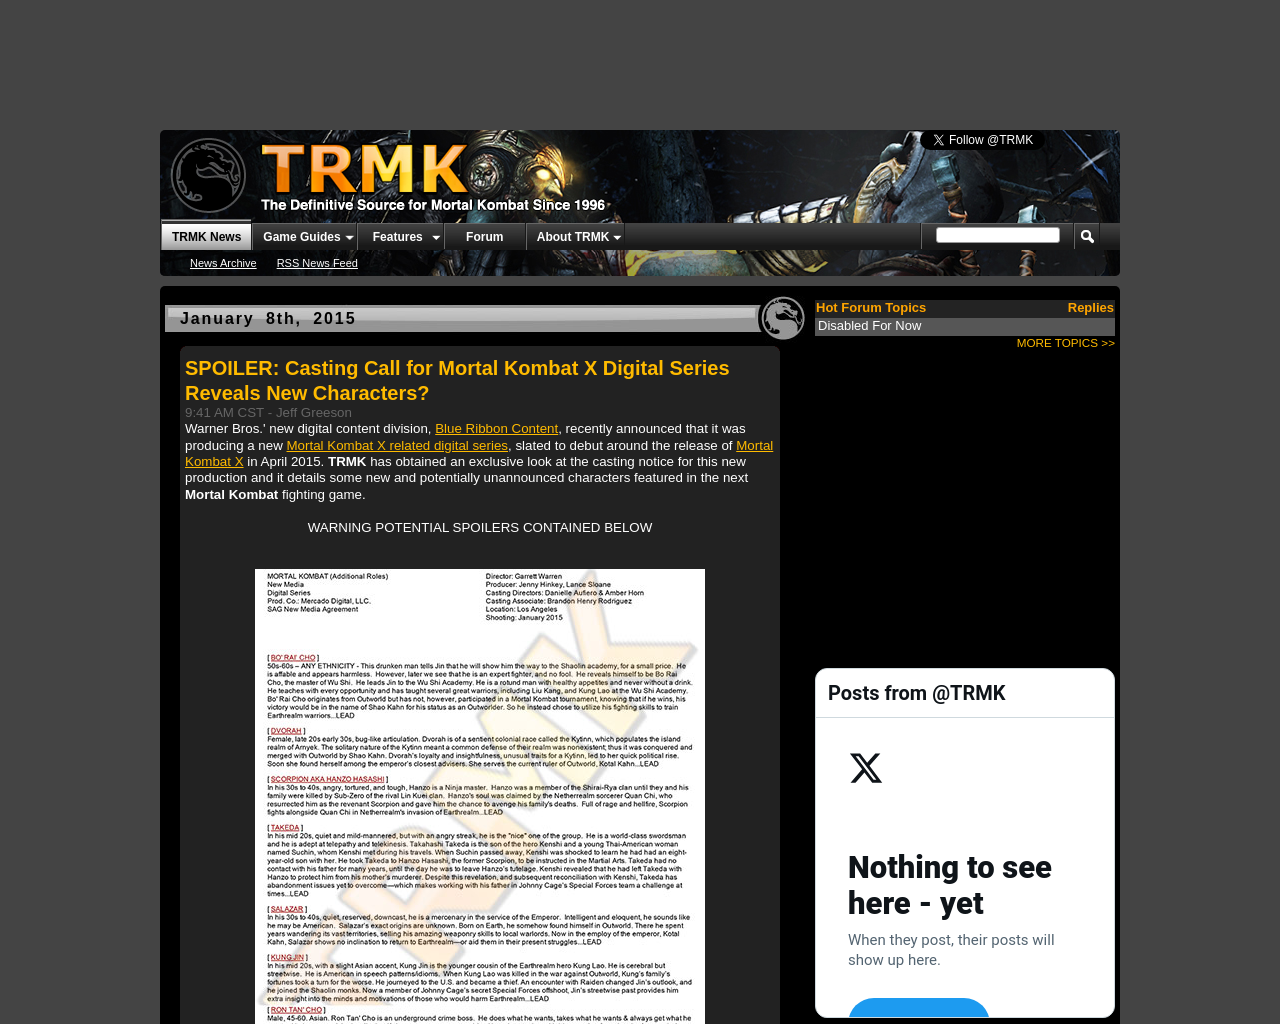 trmk.org